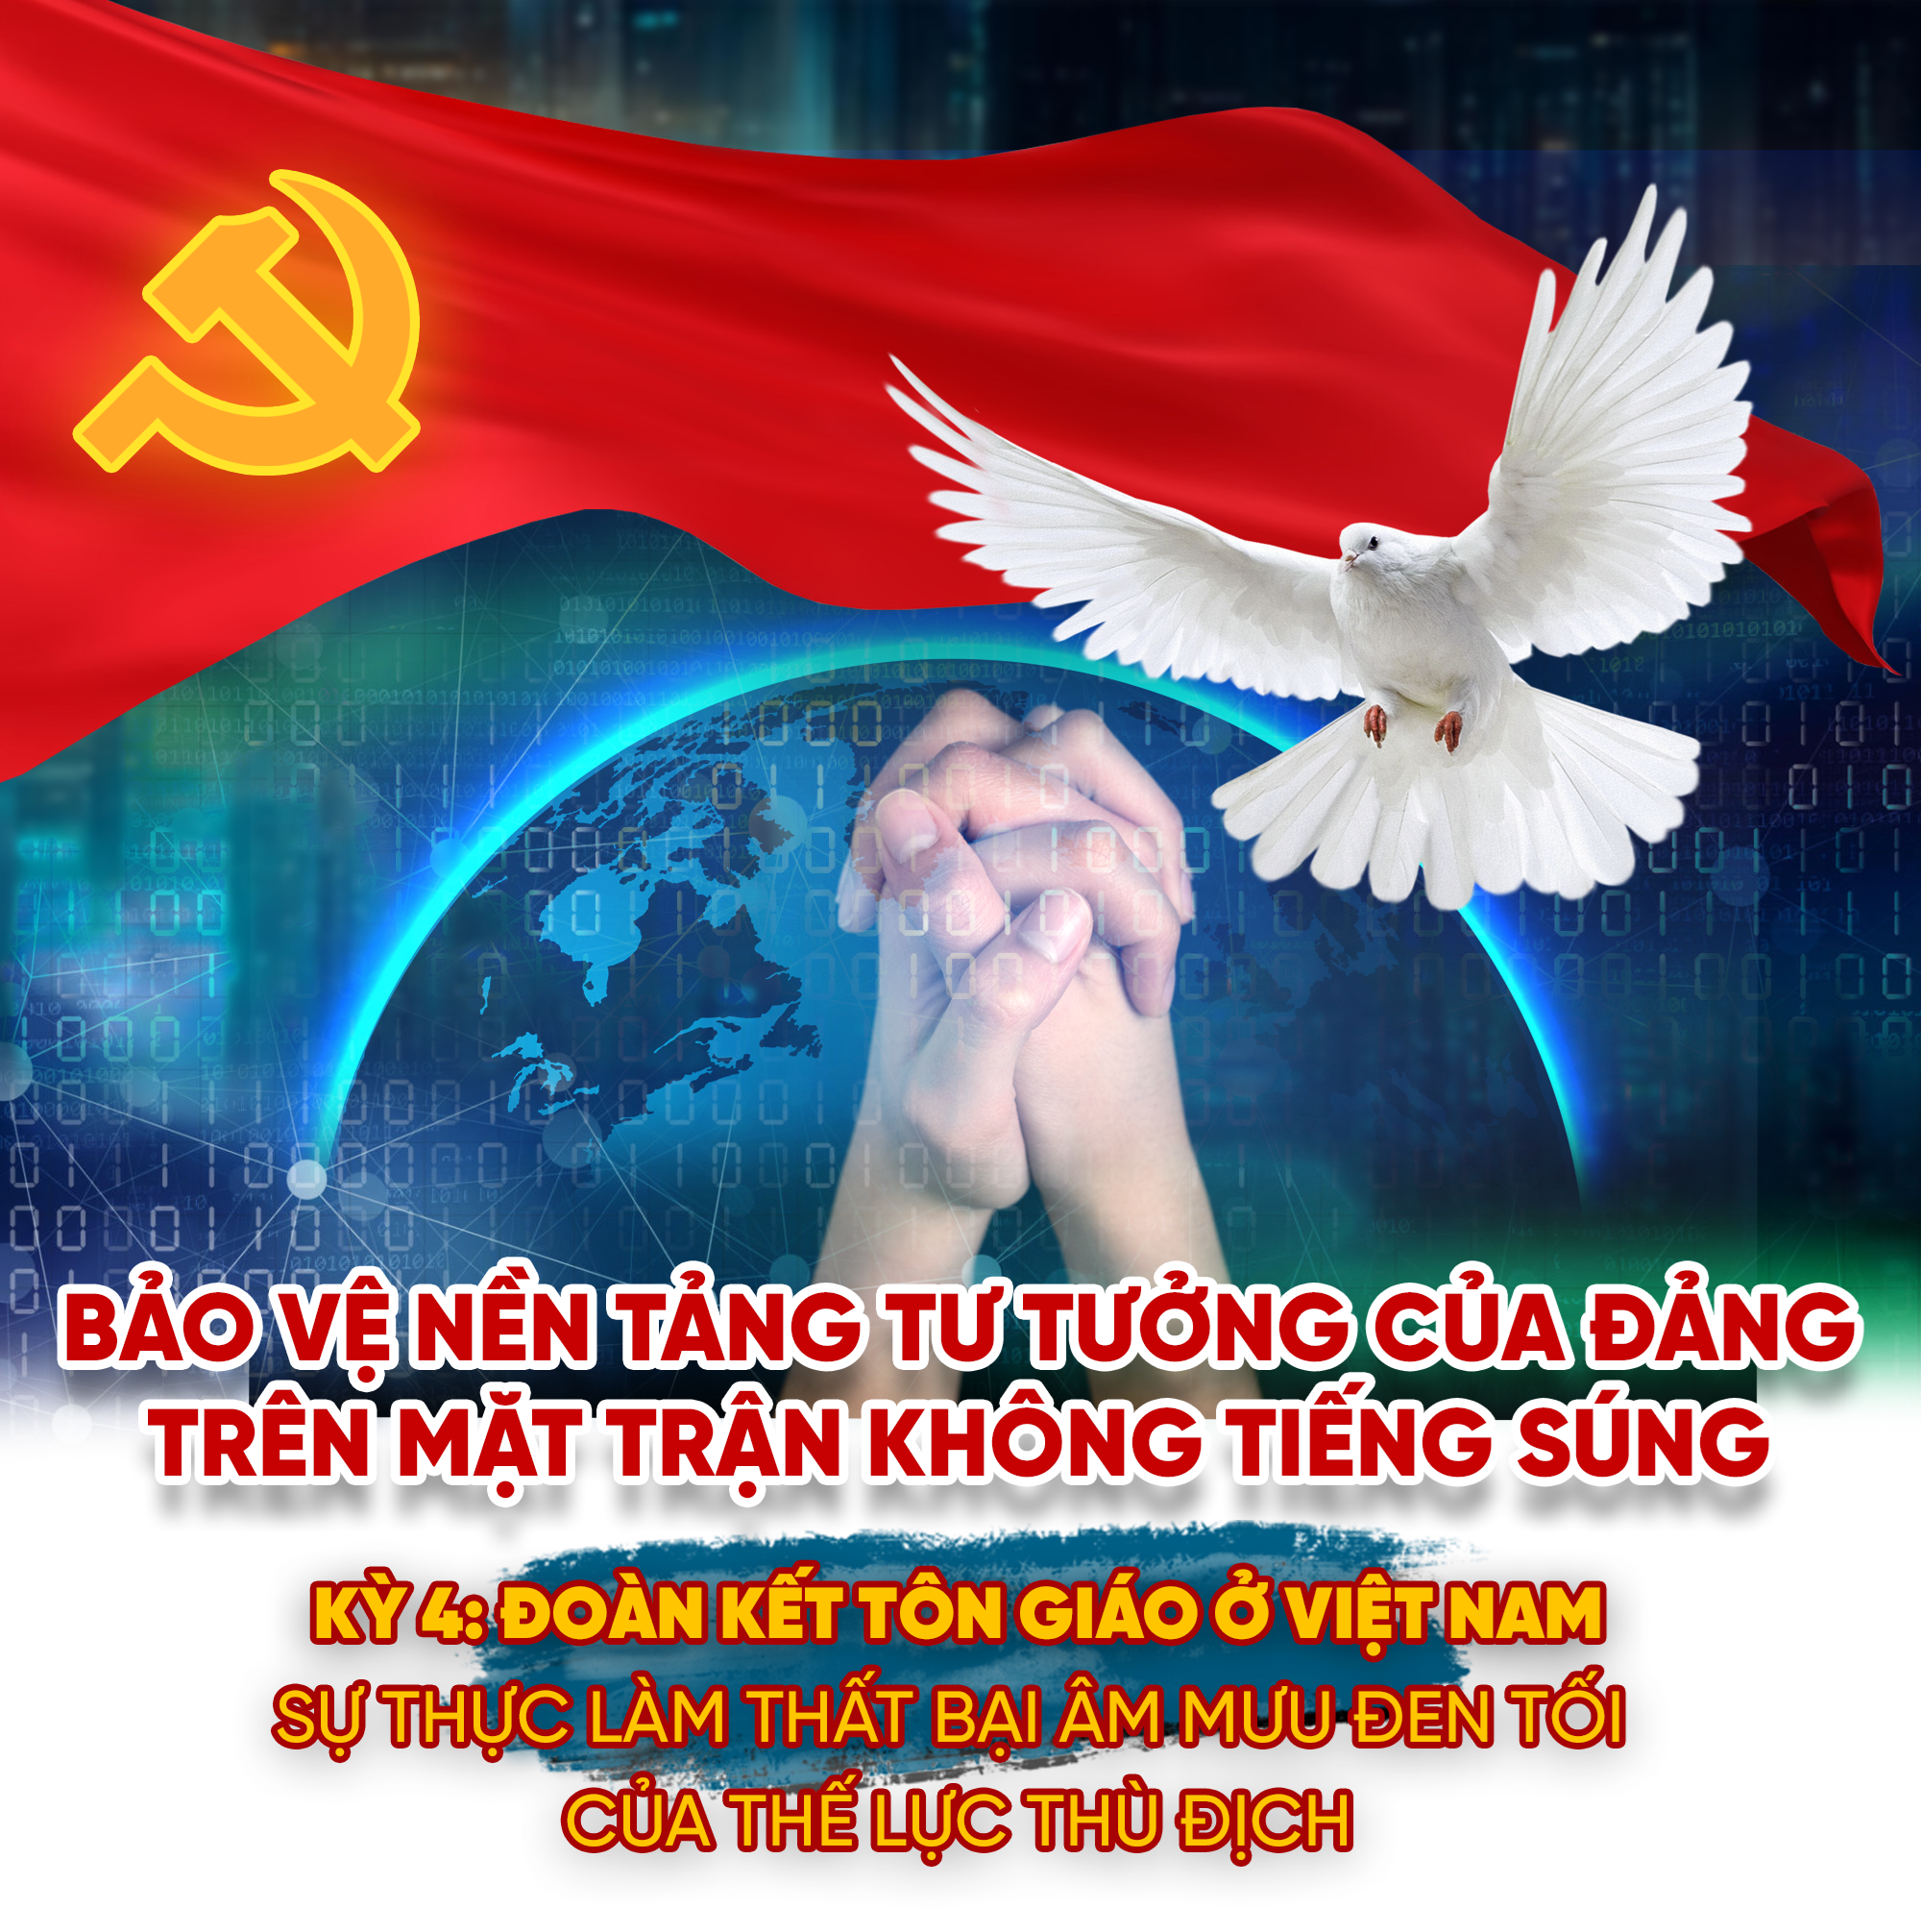 Kỳ 4: Đoàn kết tôn giáo ở Việt Nam-sự thực làm thất bại âm mưu đen tối của thế lực thù địch  - ảnh 1